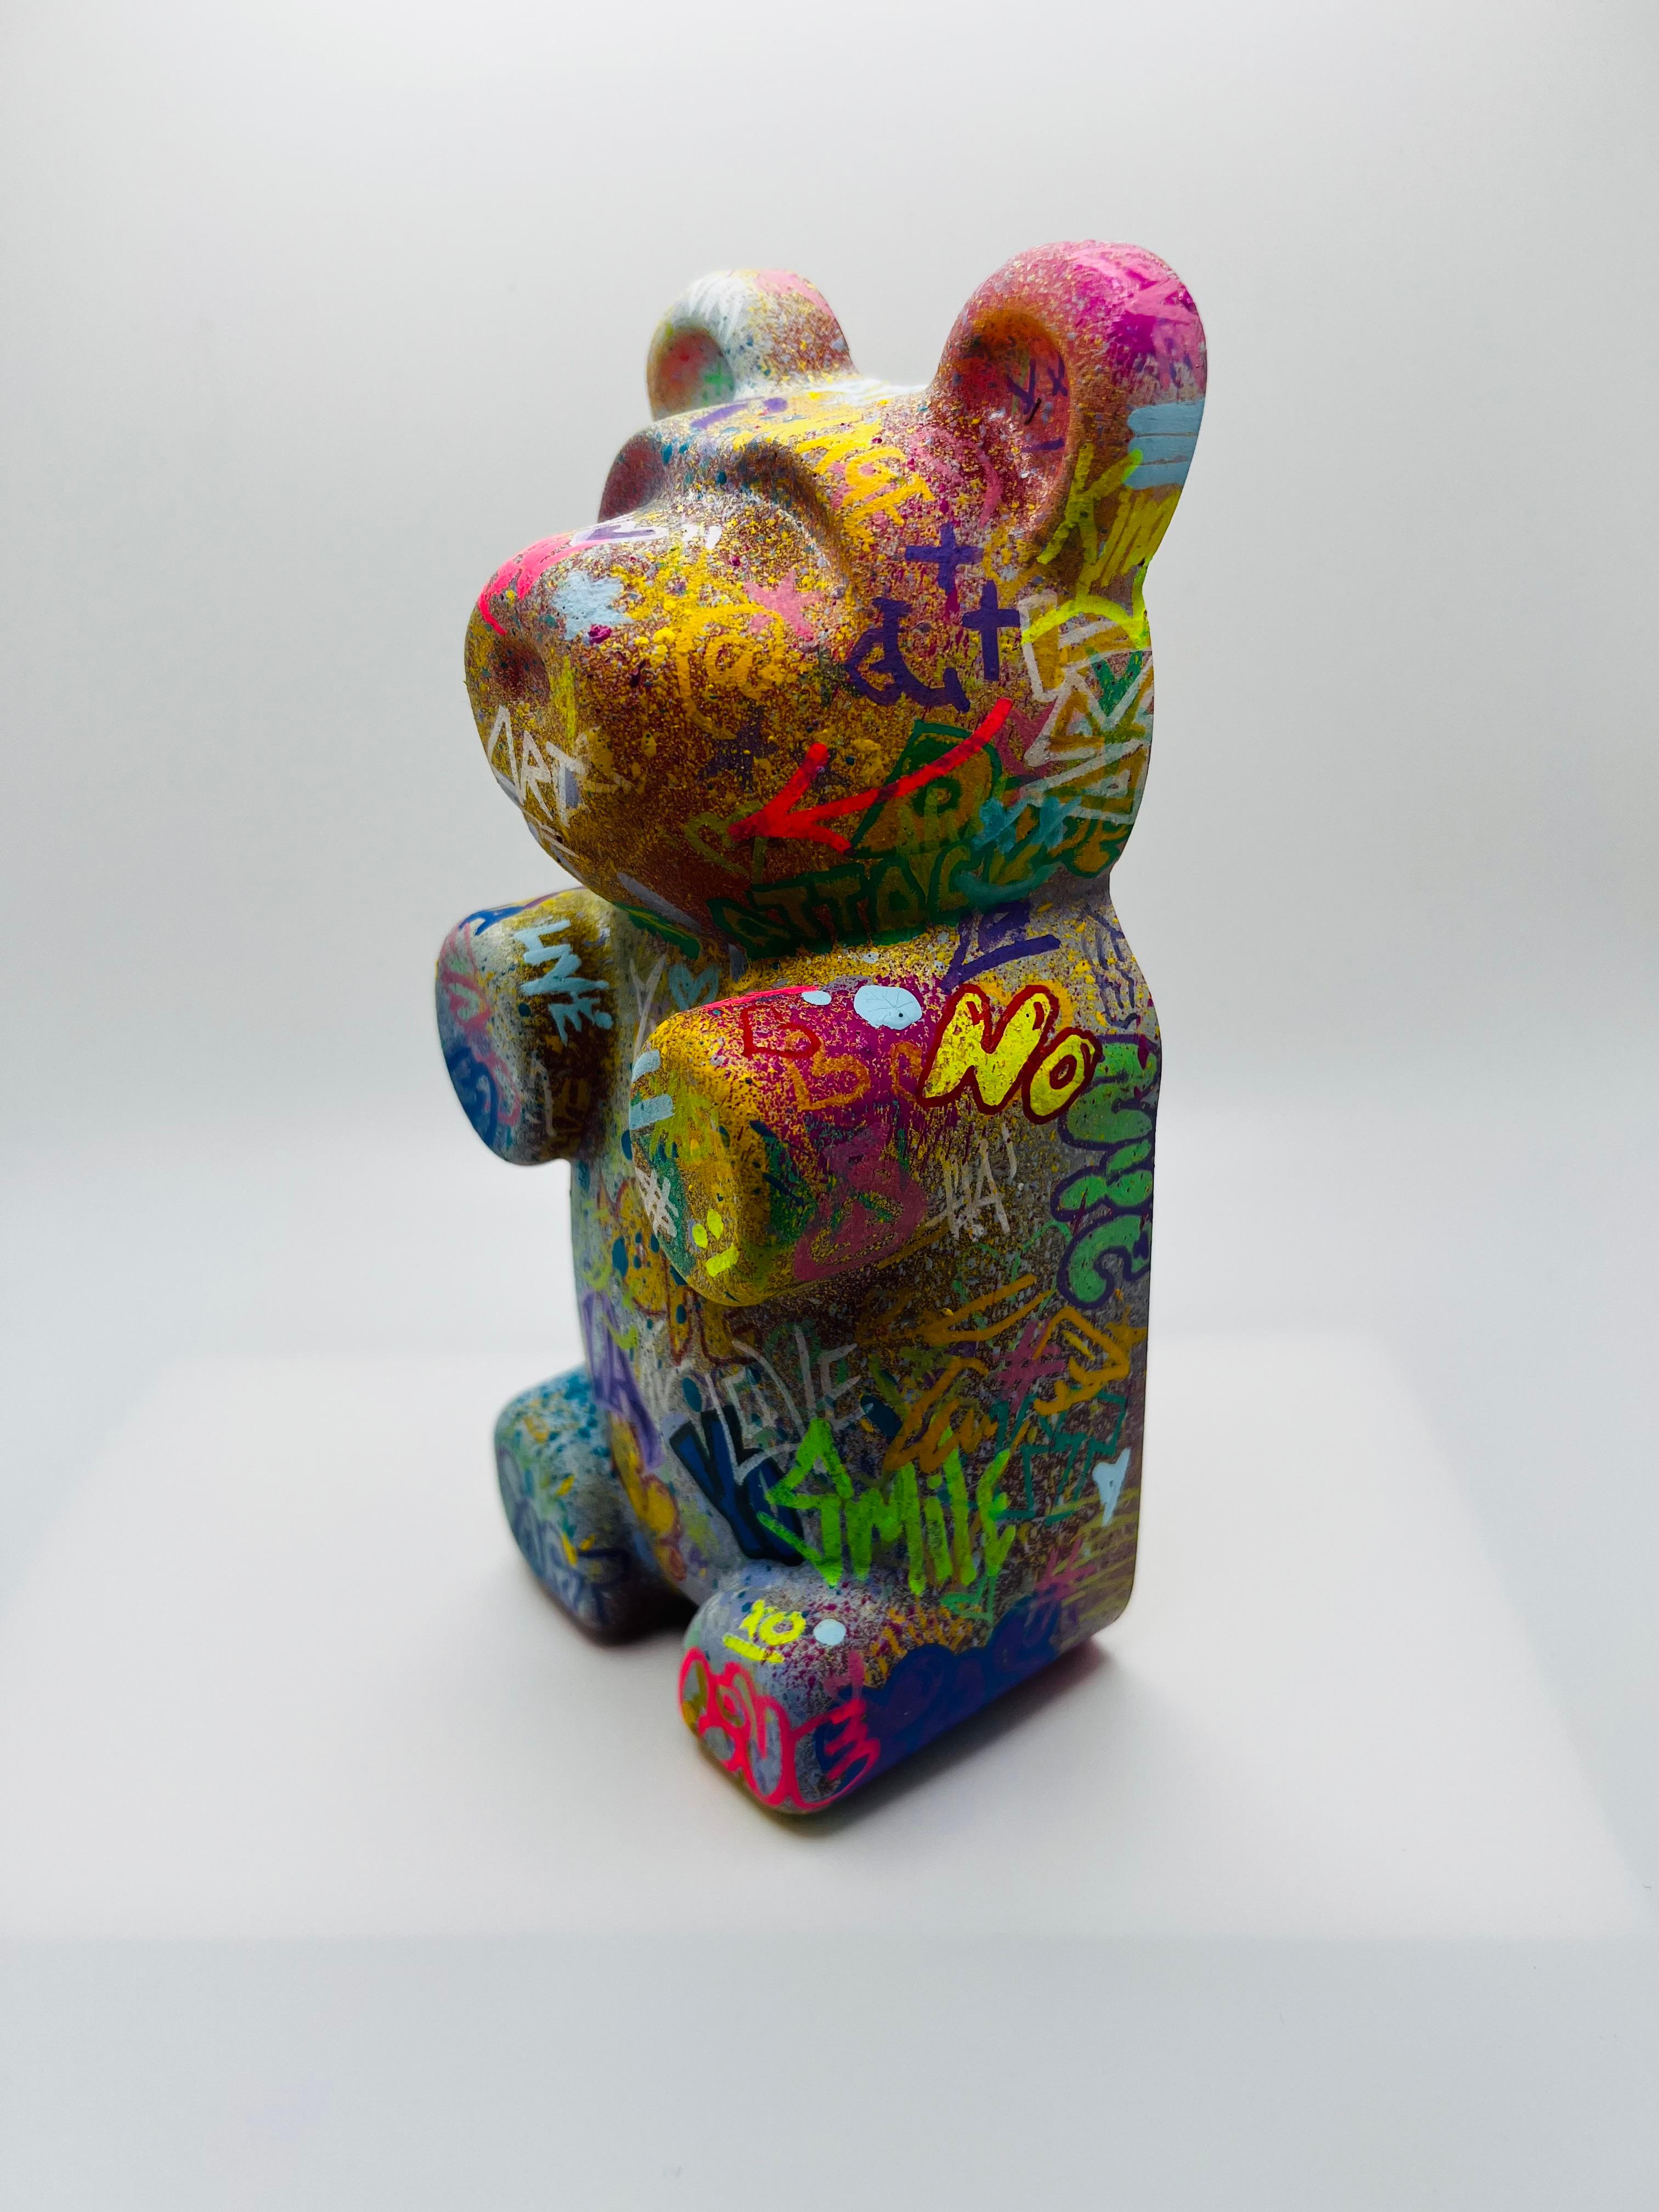 Graffiti Gummibärchen 2, Straßenkunst, Pop Art, farbenfroh, zeitgenössisch, Skulptur – Mixed Media Art von Sahara Novotny